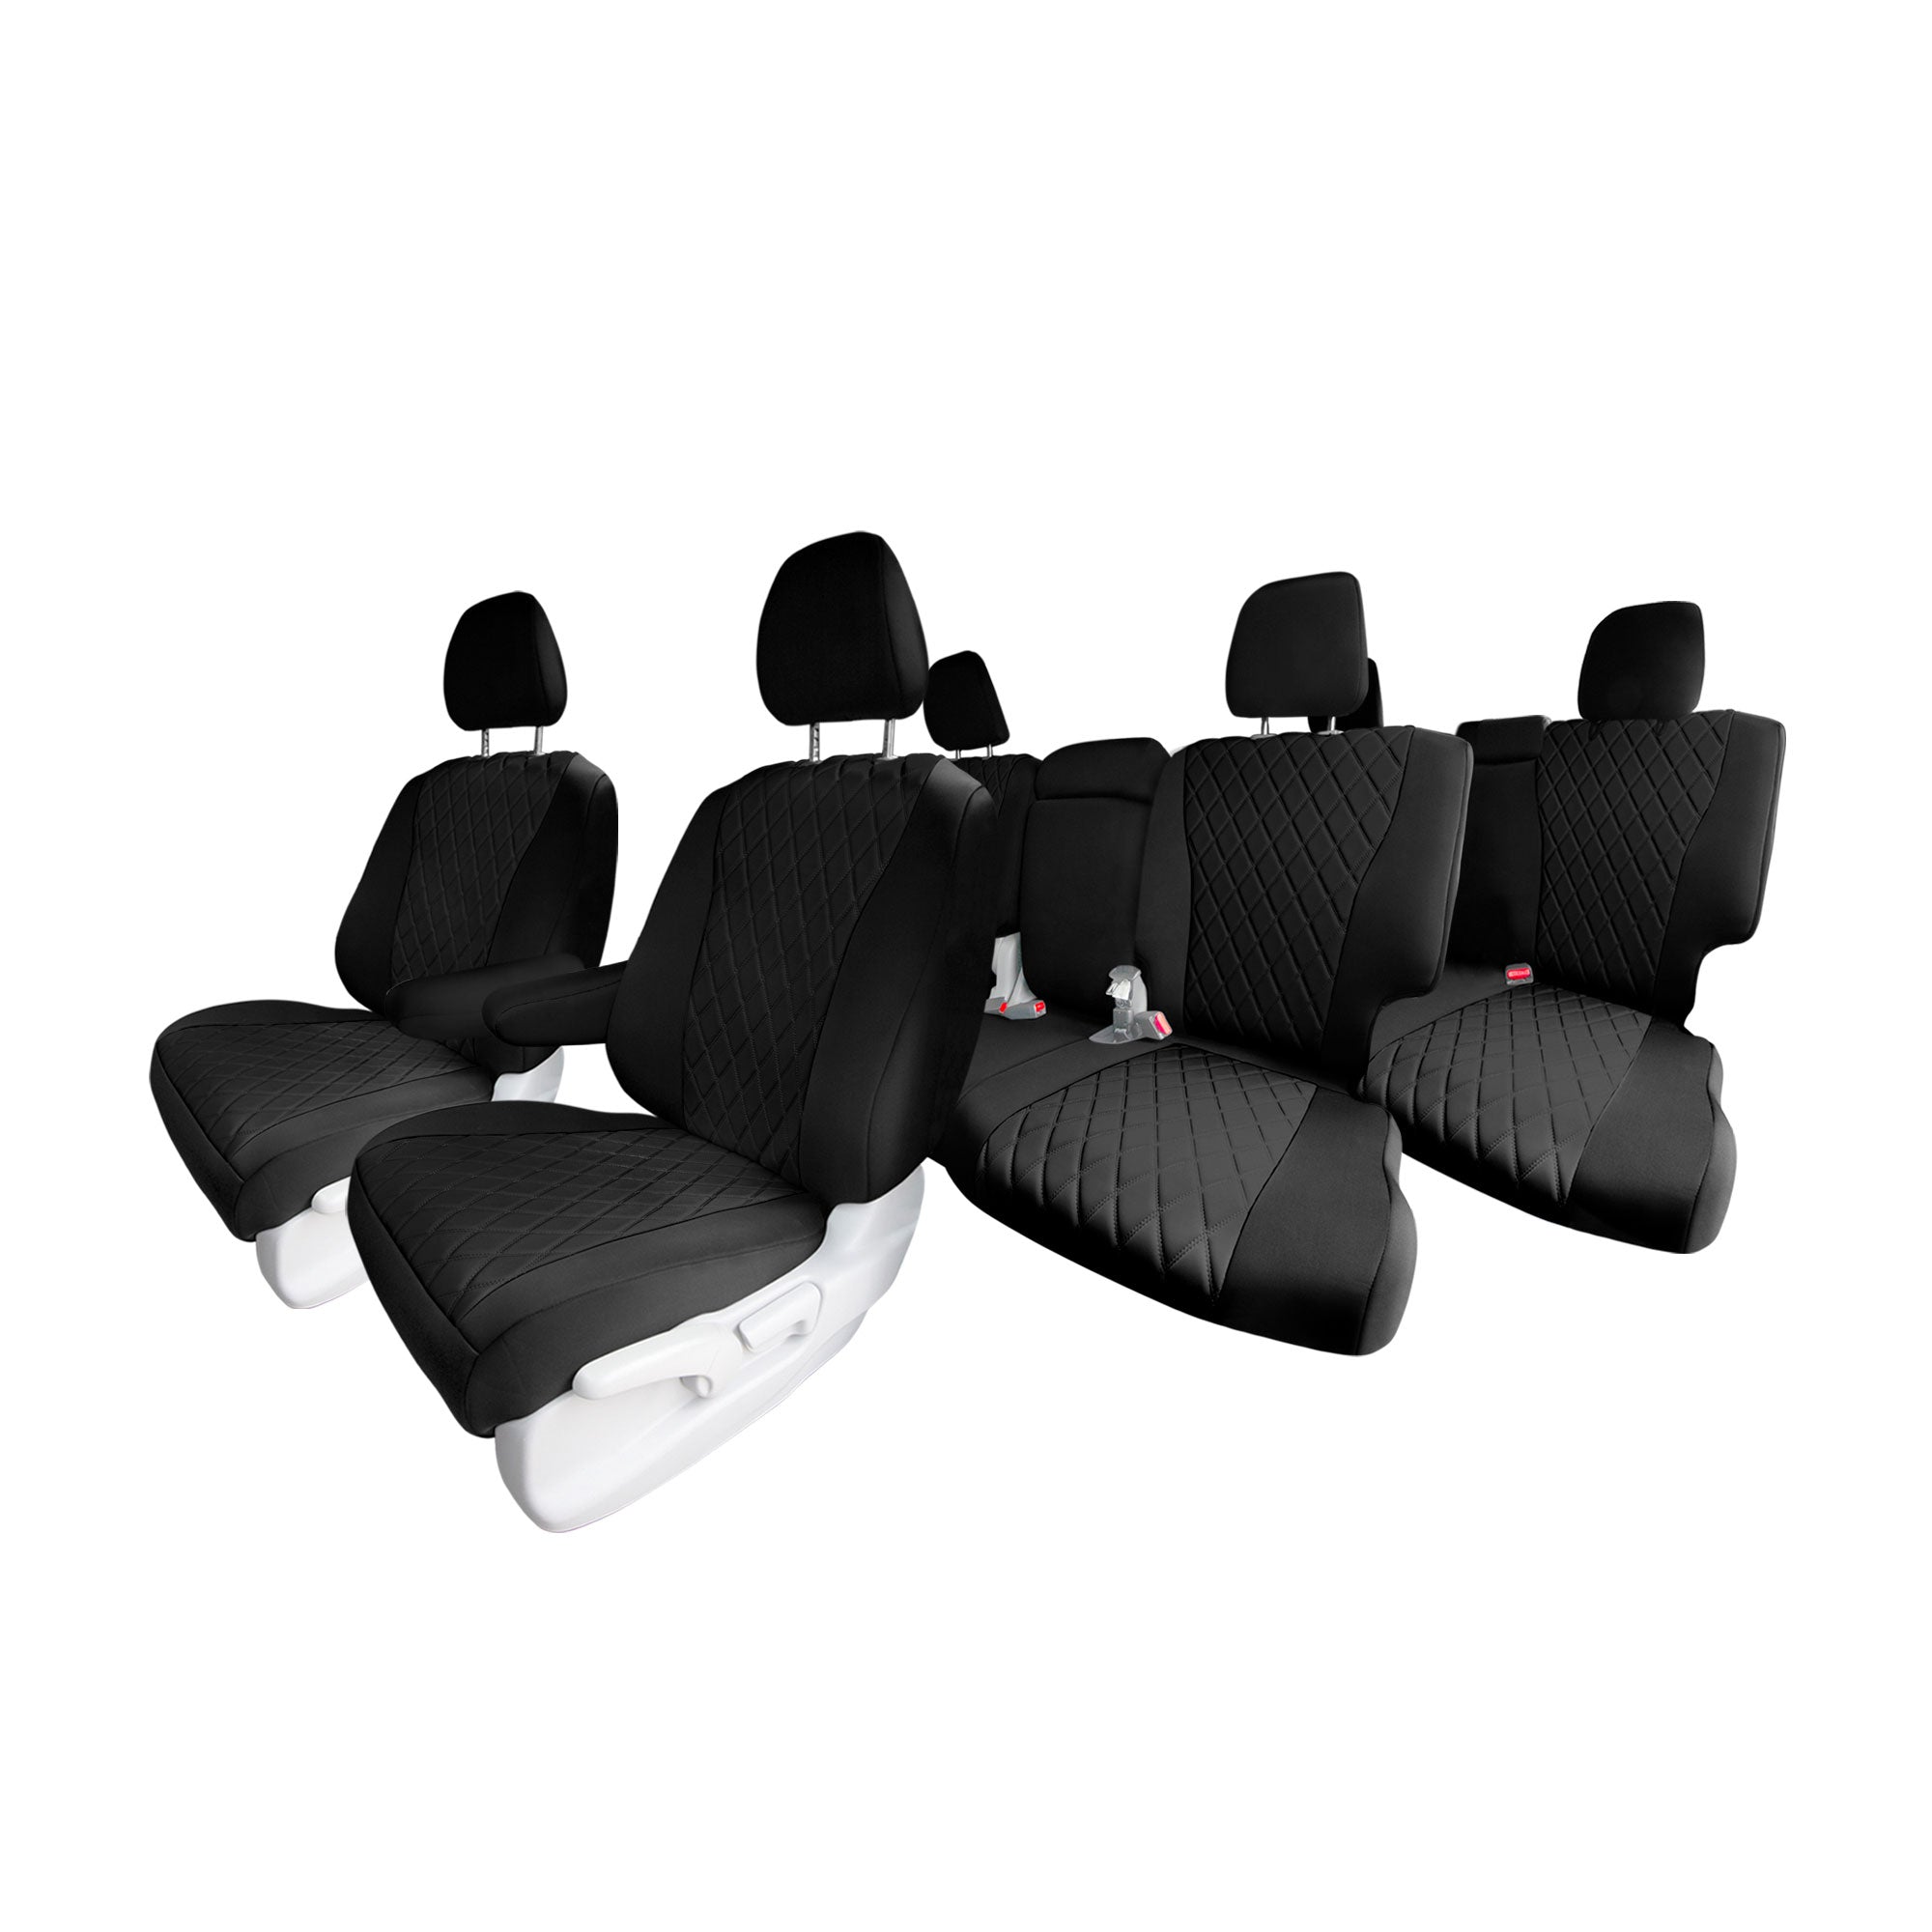 Honda Pilot 2016 - 2022 - Full Set Seat Covers - Black Ultraflex Neoprene